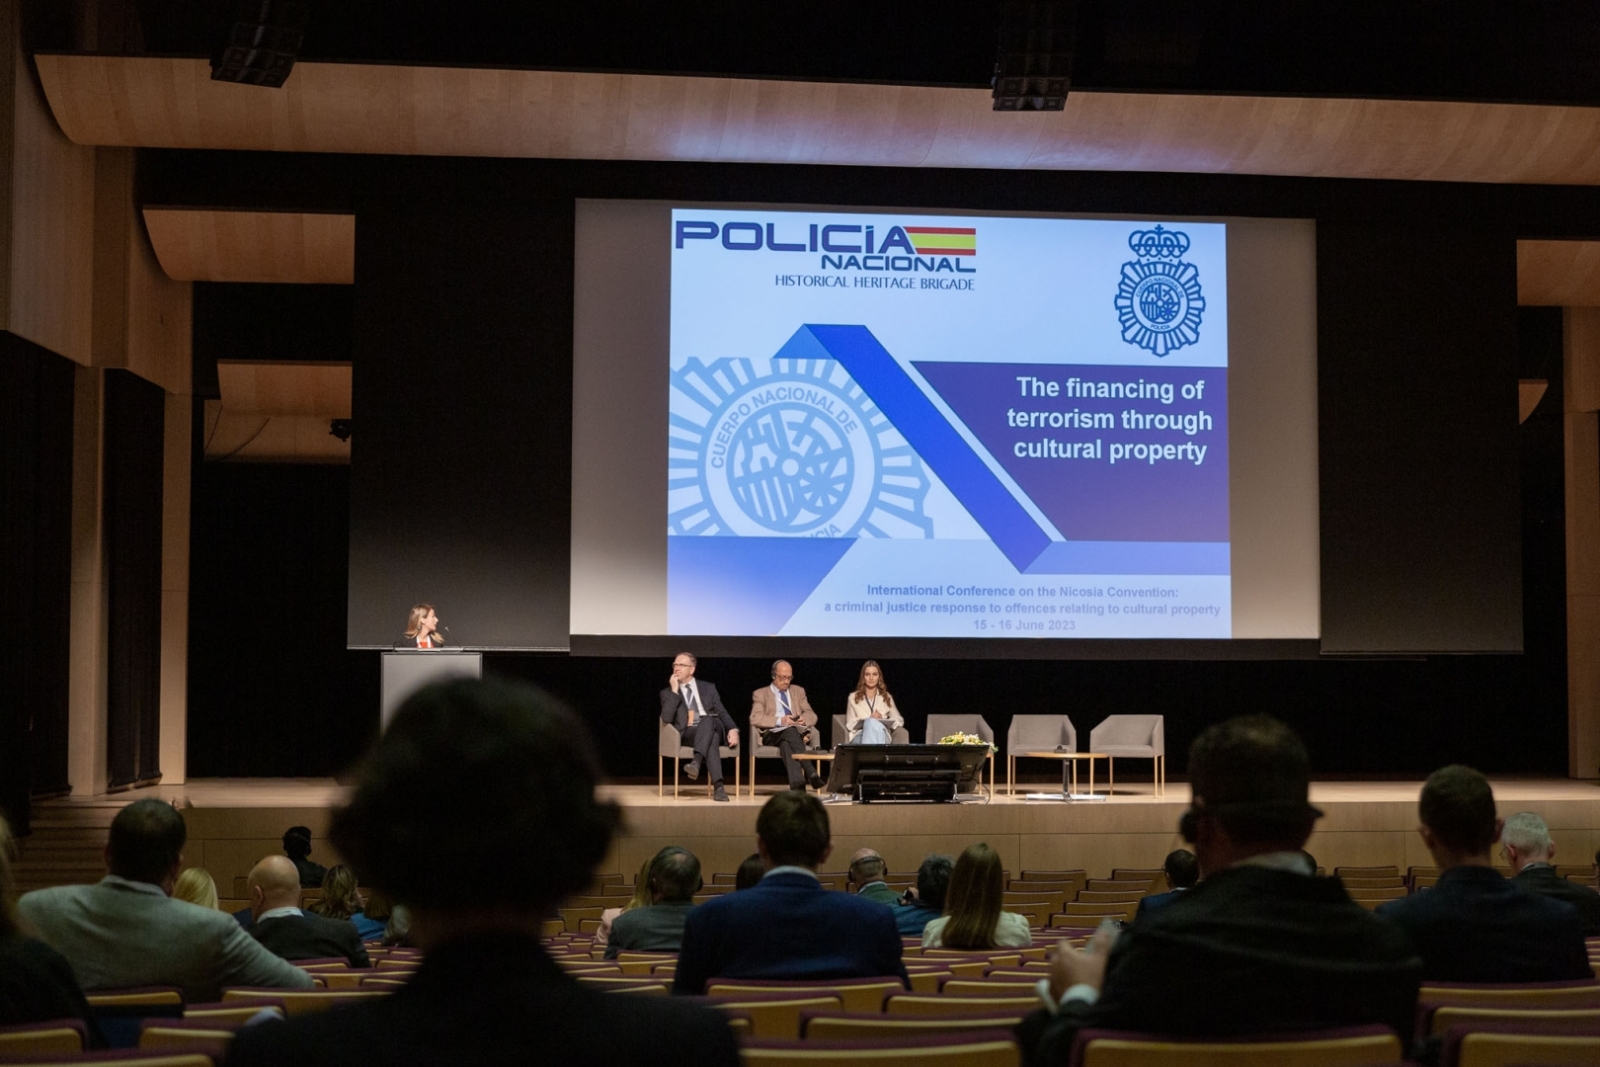 Starptautiskā konference “Nikosijas konvencija: krimināltiesiskā atbilde uz noziedzīgiem nodarījumiem, kas saistīti ar kultūras vērtībām”